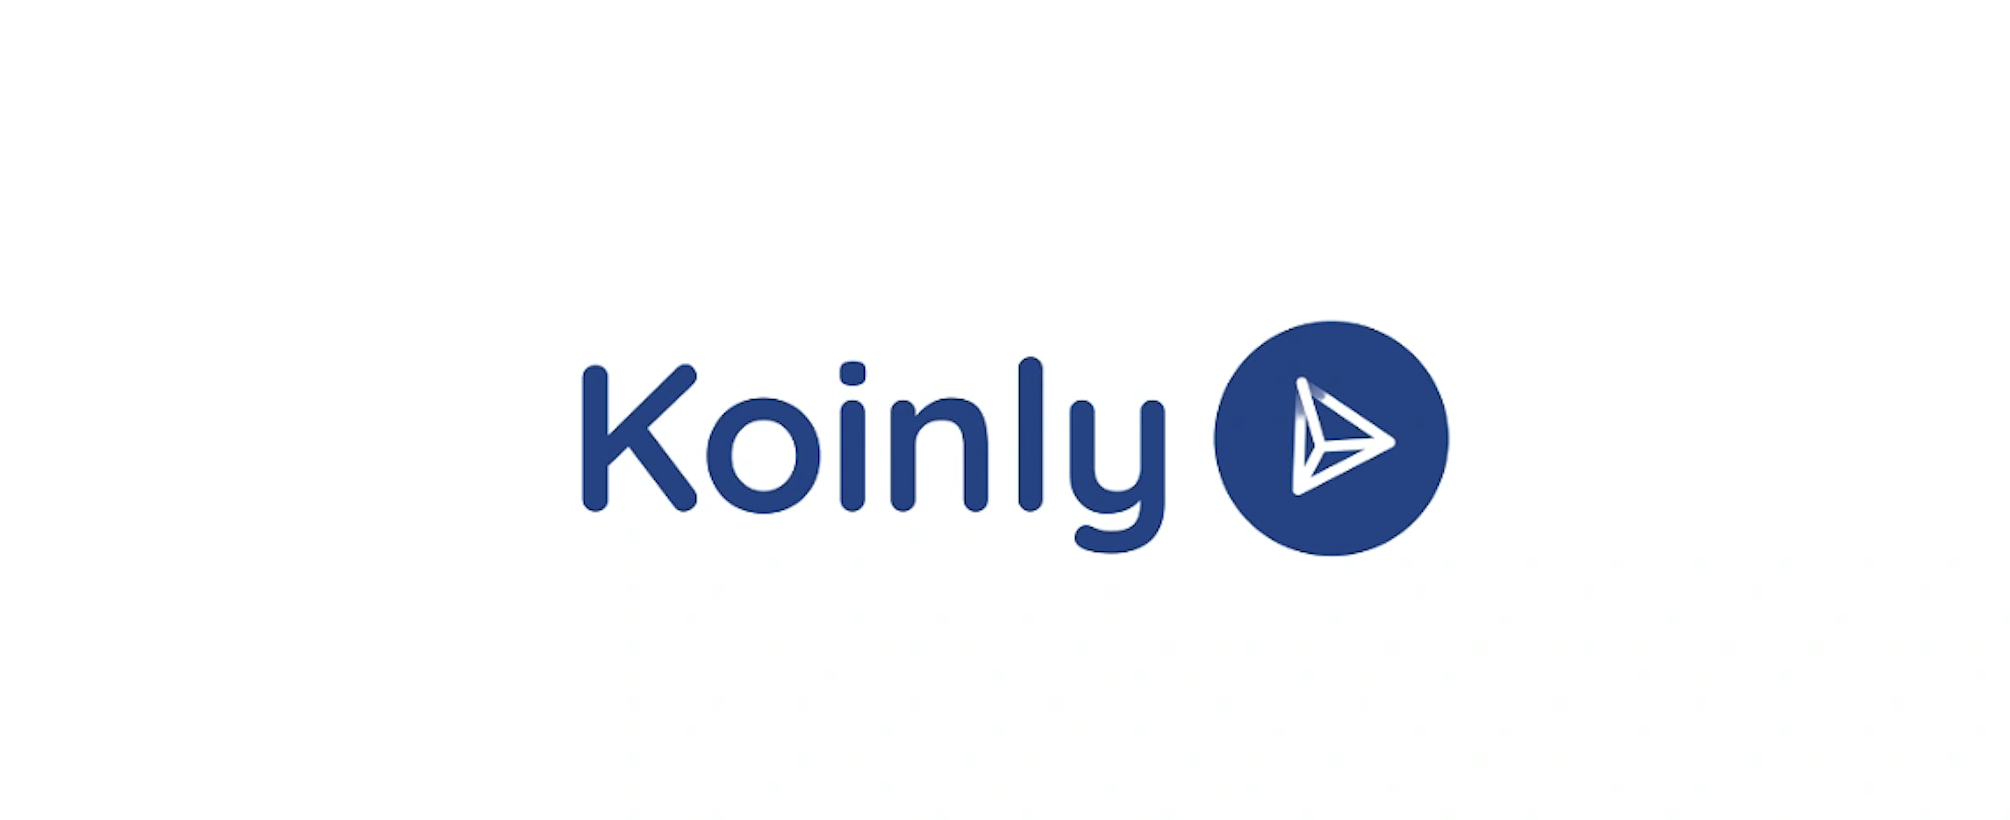 Koinly - A portfolio manager and graph explorer